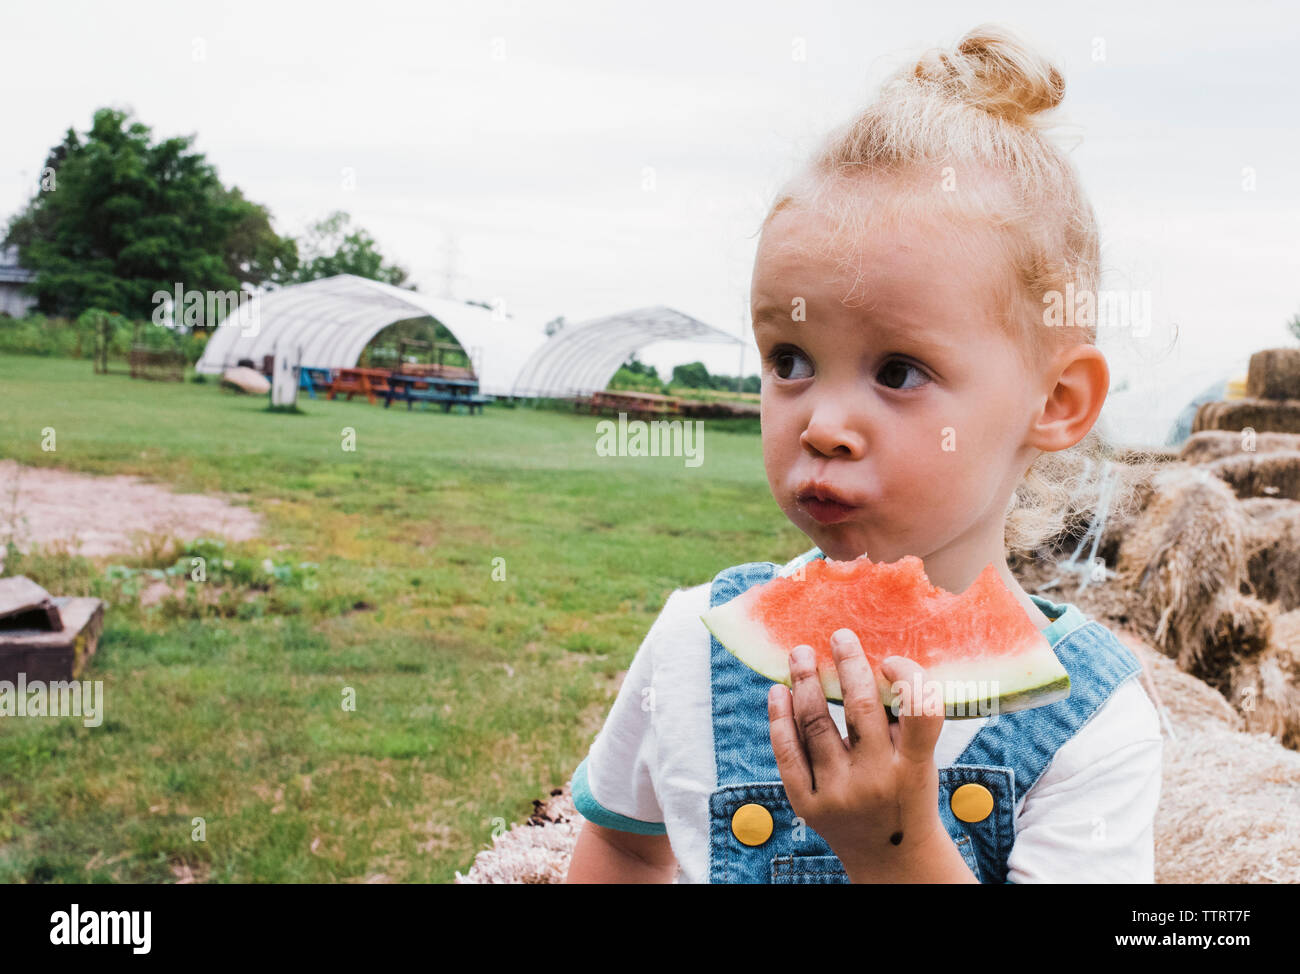 Girl eating watermelon contre ciel clair au niveau de l'exploitation Banque D'Images